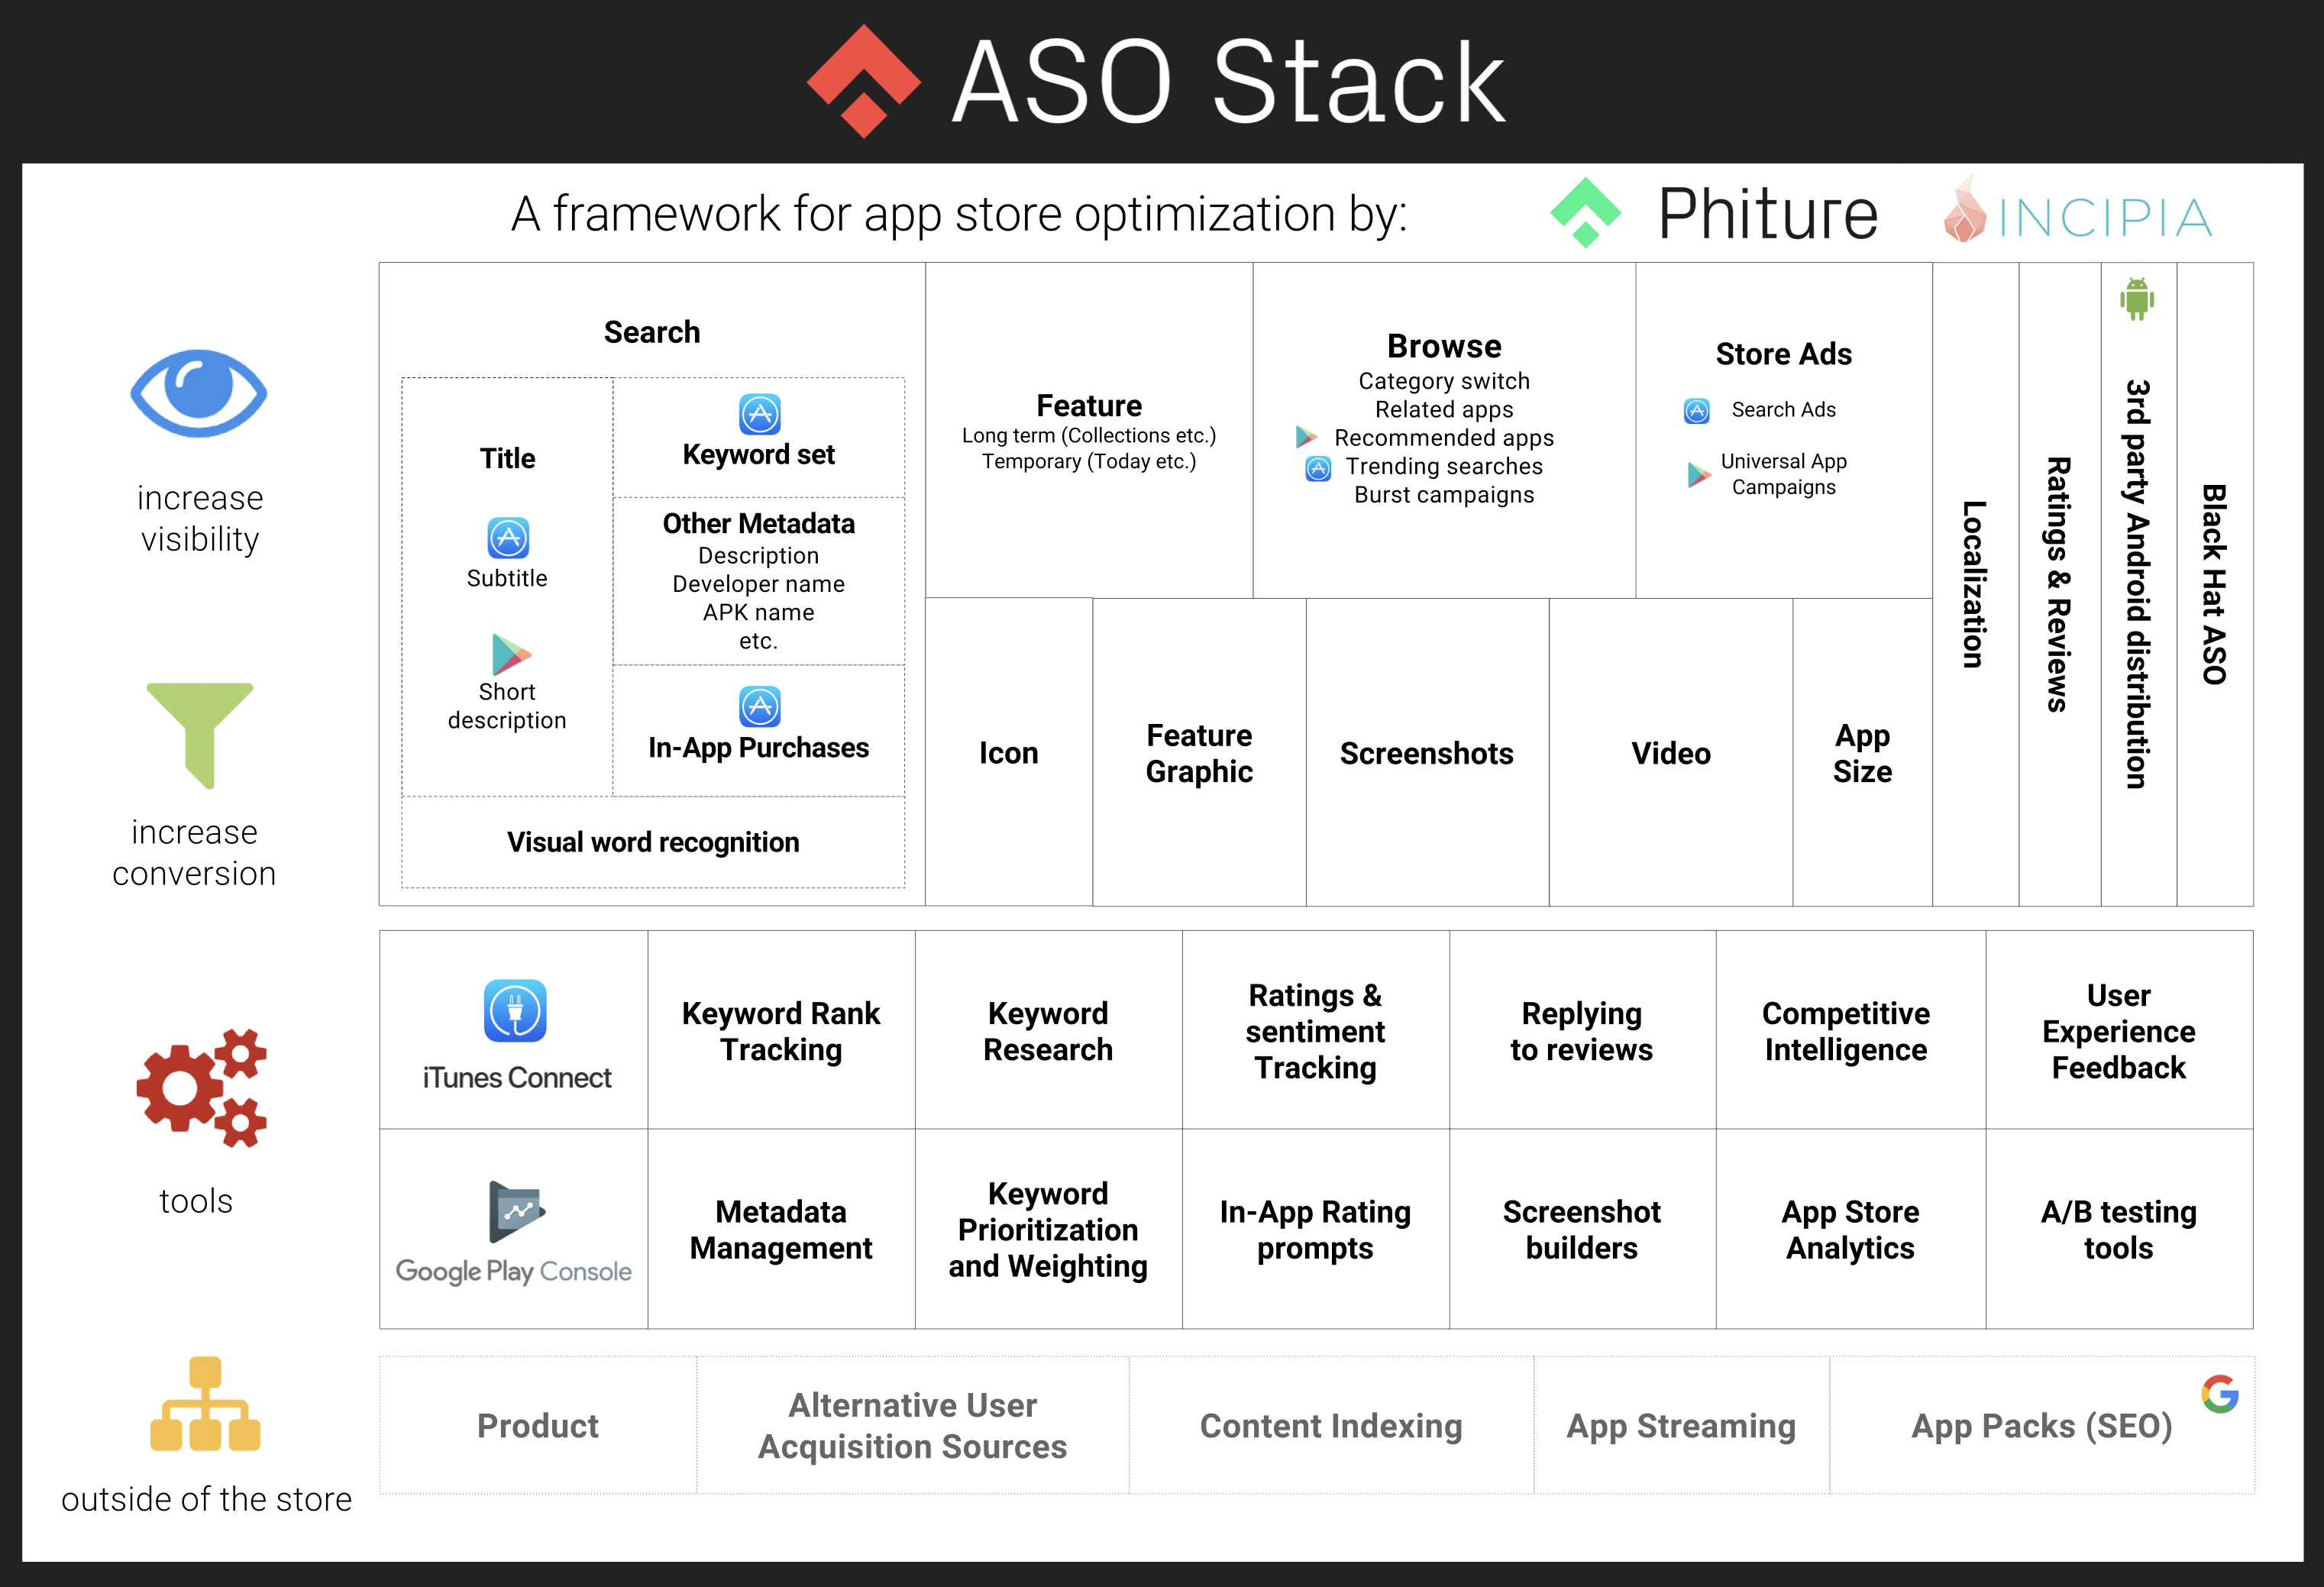 aso stack framework for ASO-